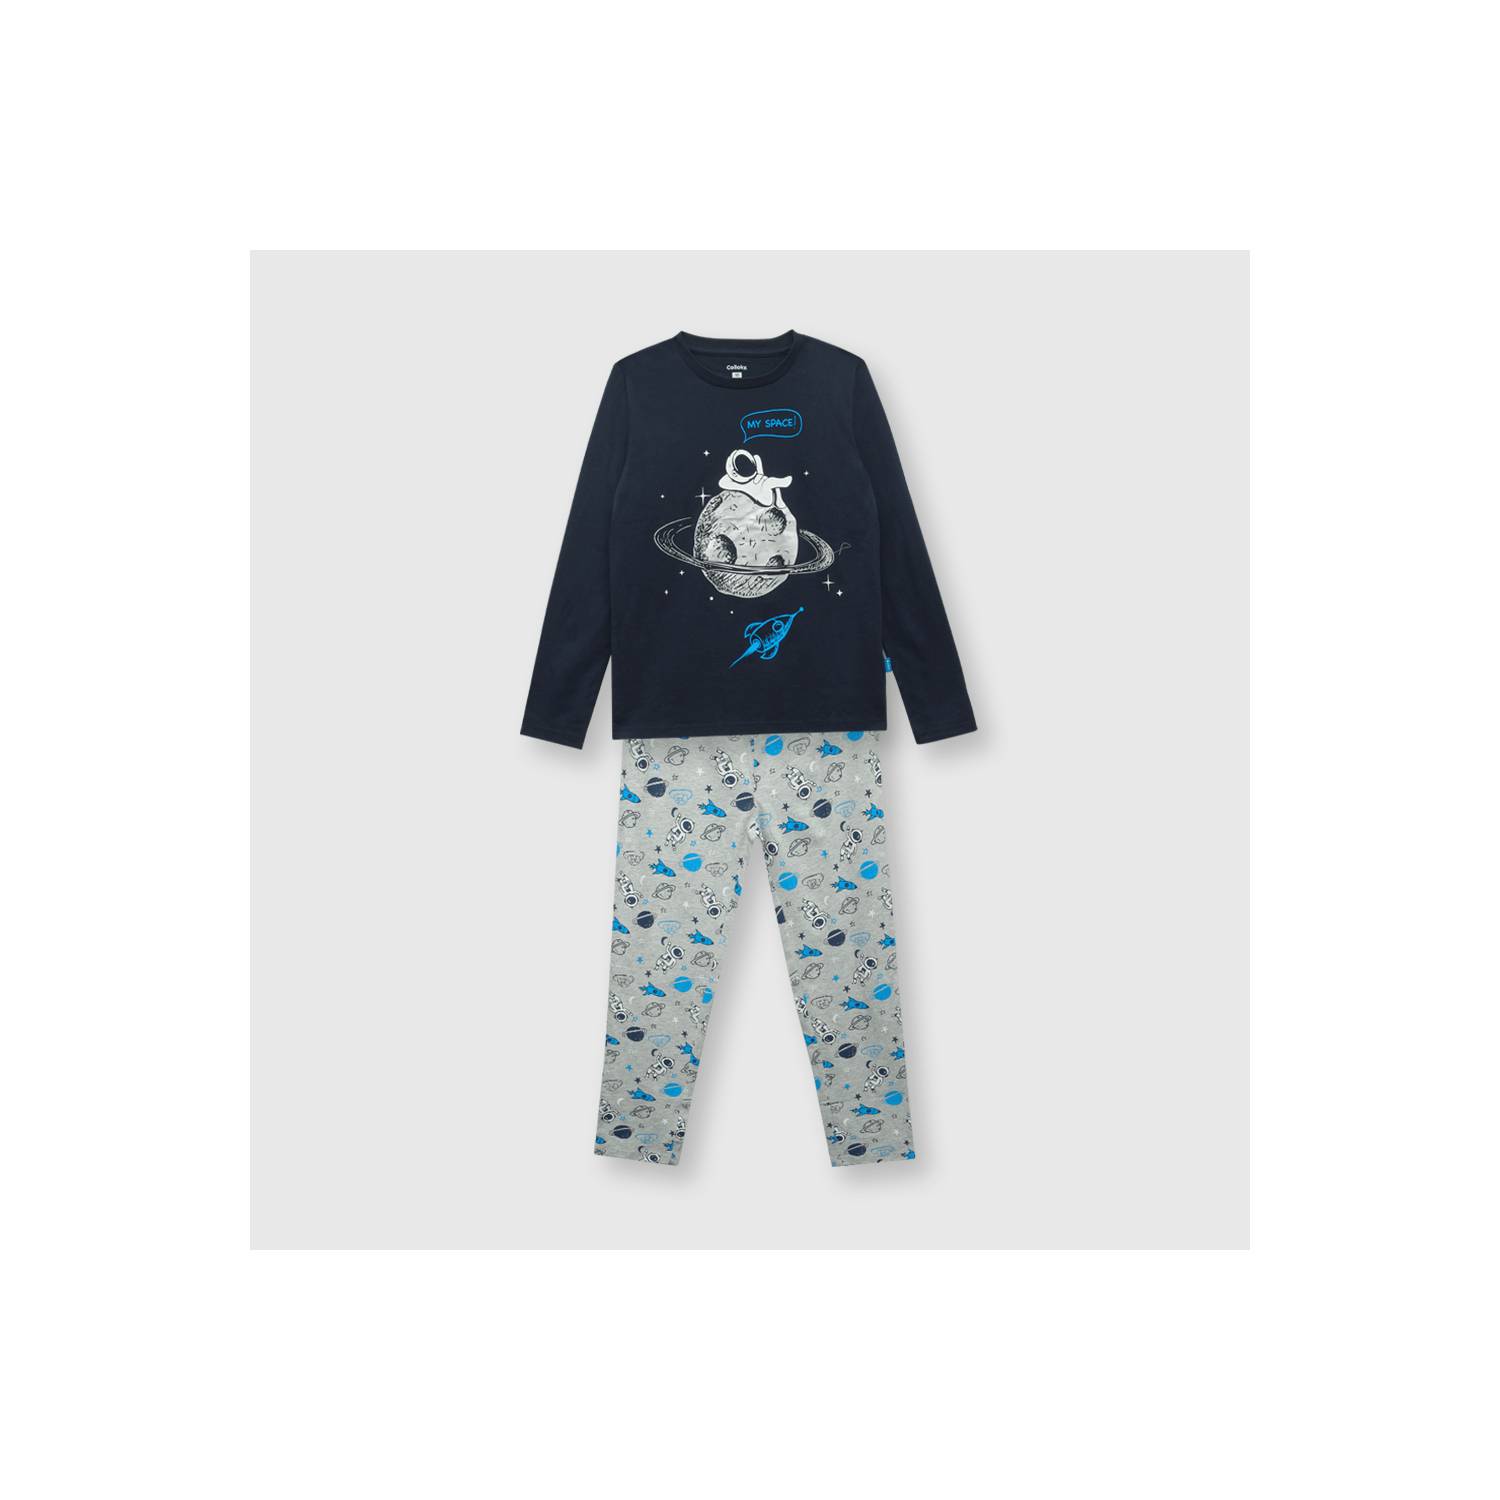 COLLOKY Pijama de niño de algodón azul / blue (2 a 12 años) 6 6